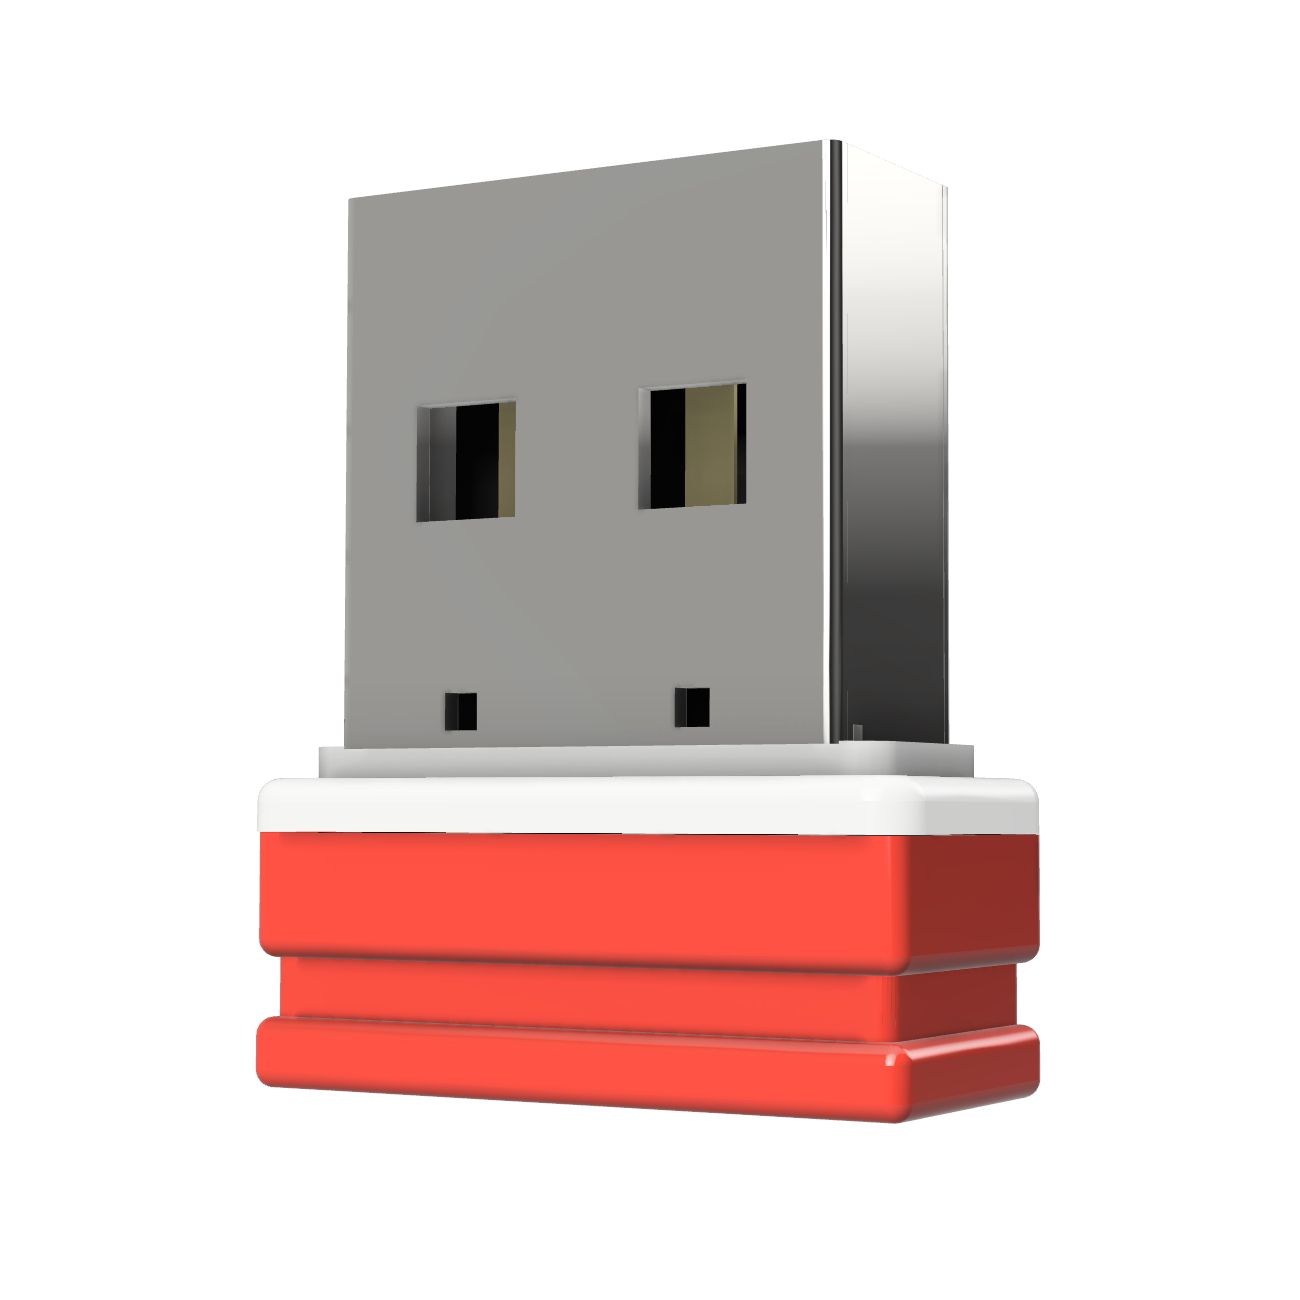 USB GERMANY ®ULTRA Mini P1 4 GB) USB-Stick (Rot/Weiss